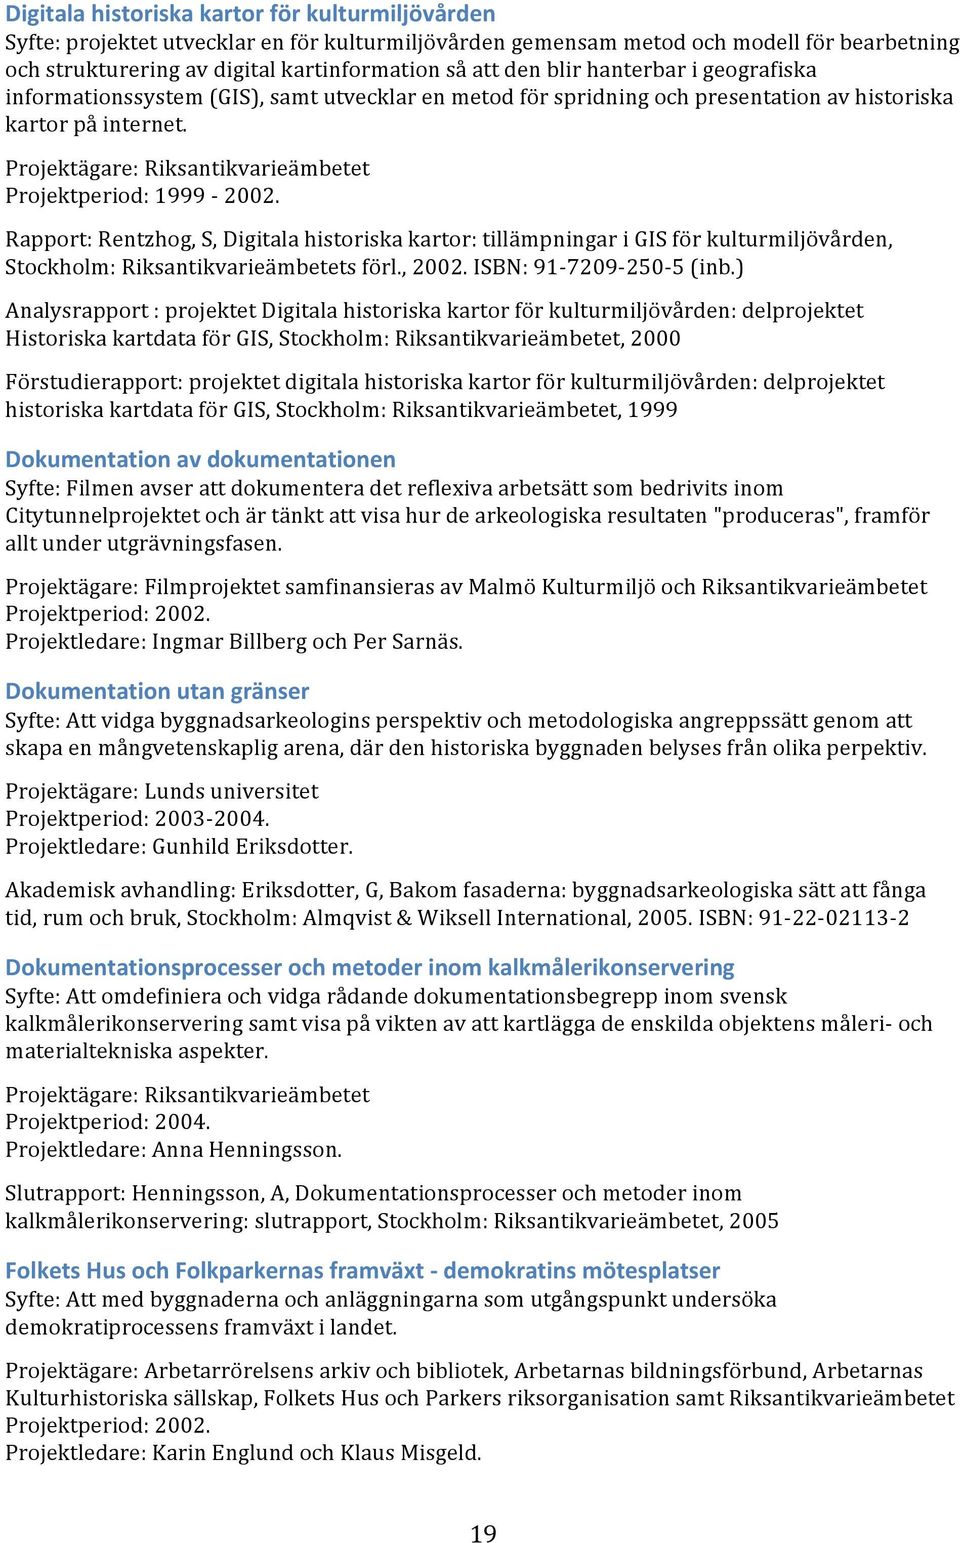 Rapport: Rentzhog, S, Digitala historiska kartor: tillämpningar i GIS för kulturmiljövården, Stockholm: Riksantikvarieämbetets förl., 2002. ISBN: 91-7209- 250-5 (inb.